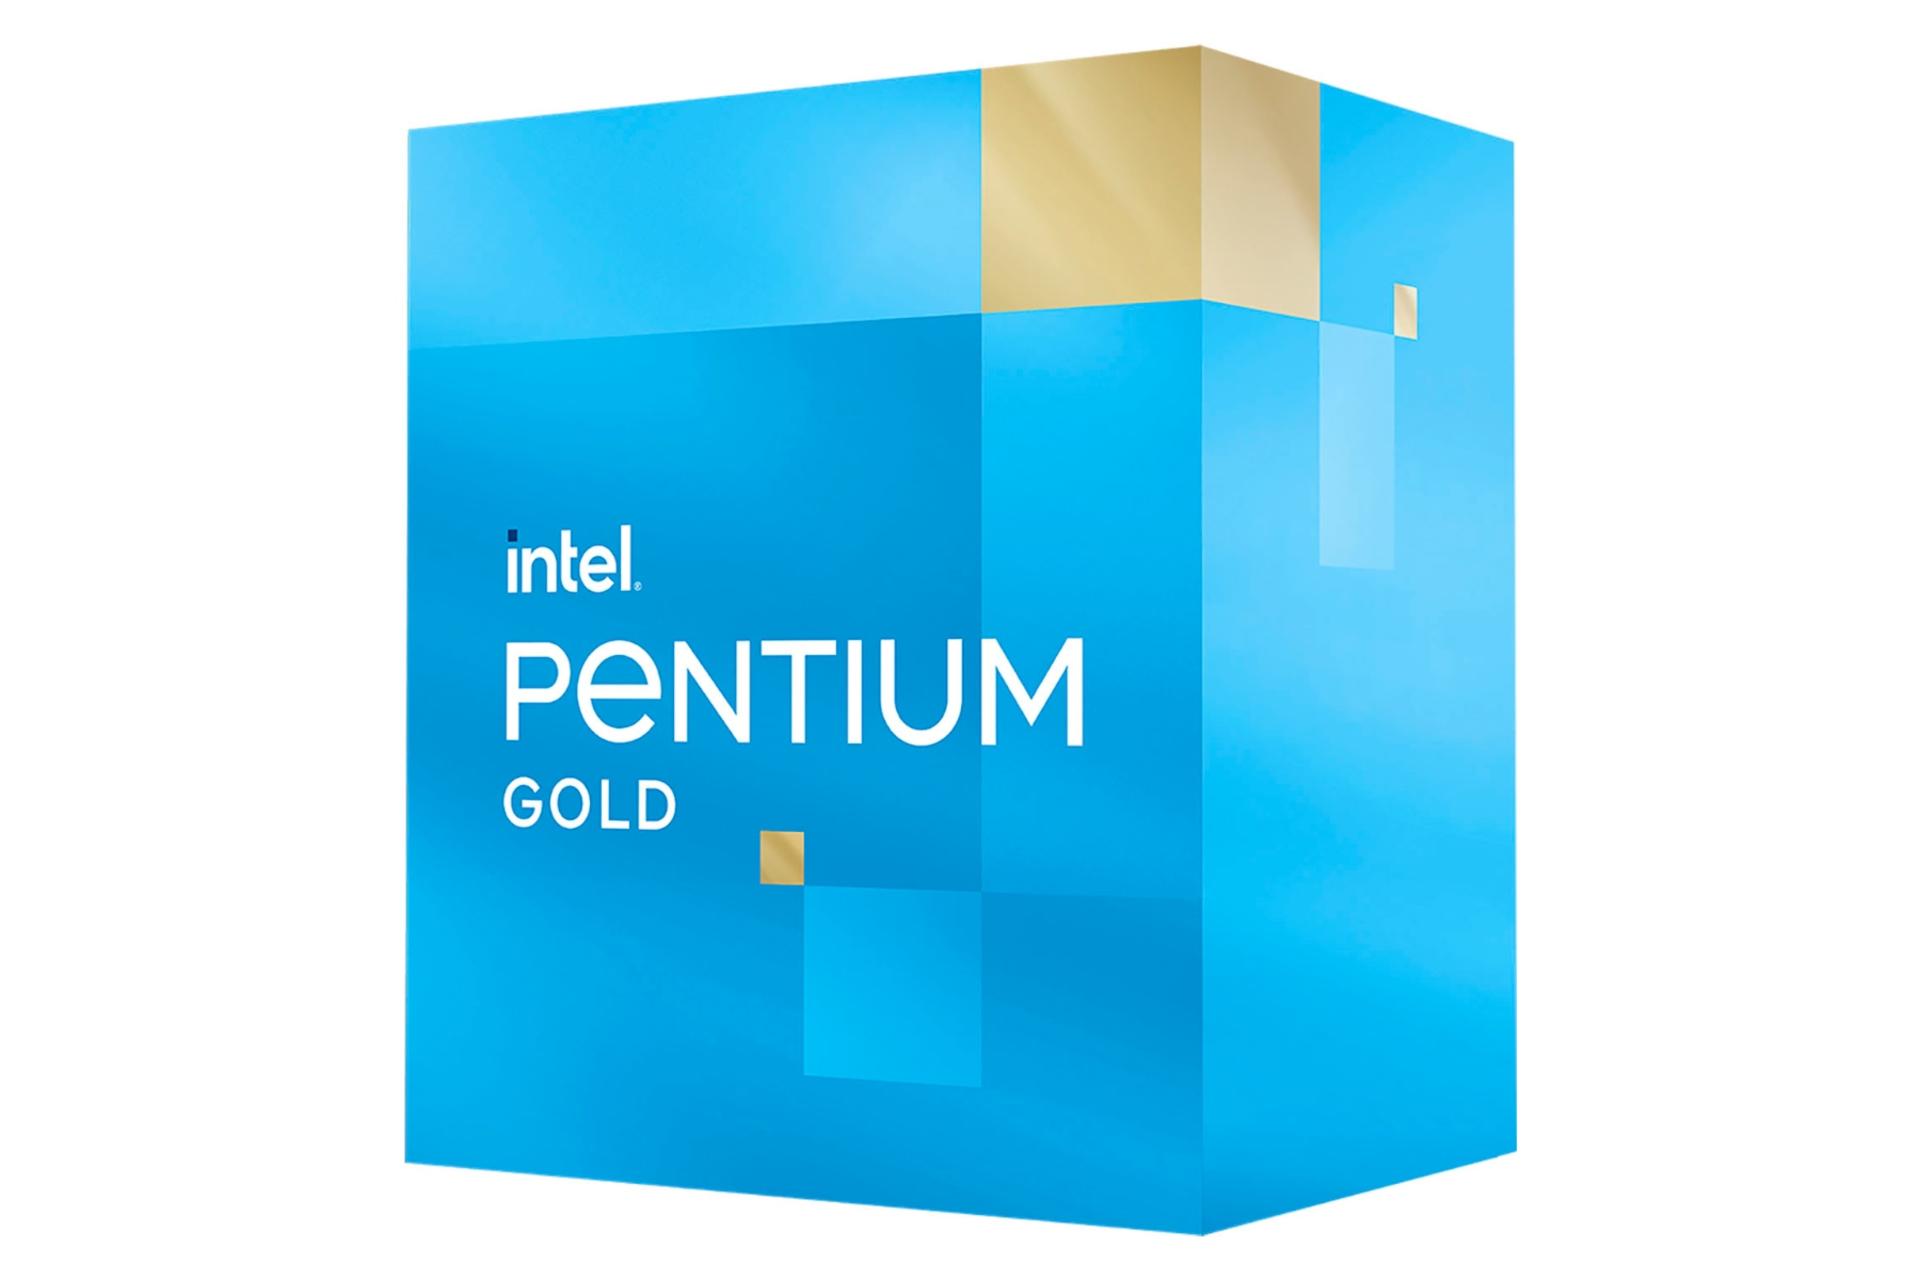 نمای راست جعبه پردازنده اینتل پنتیوم گلد نسل دوازدهم / Intel Pentium Gold 12th Gen